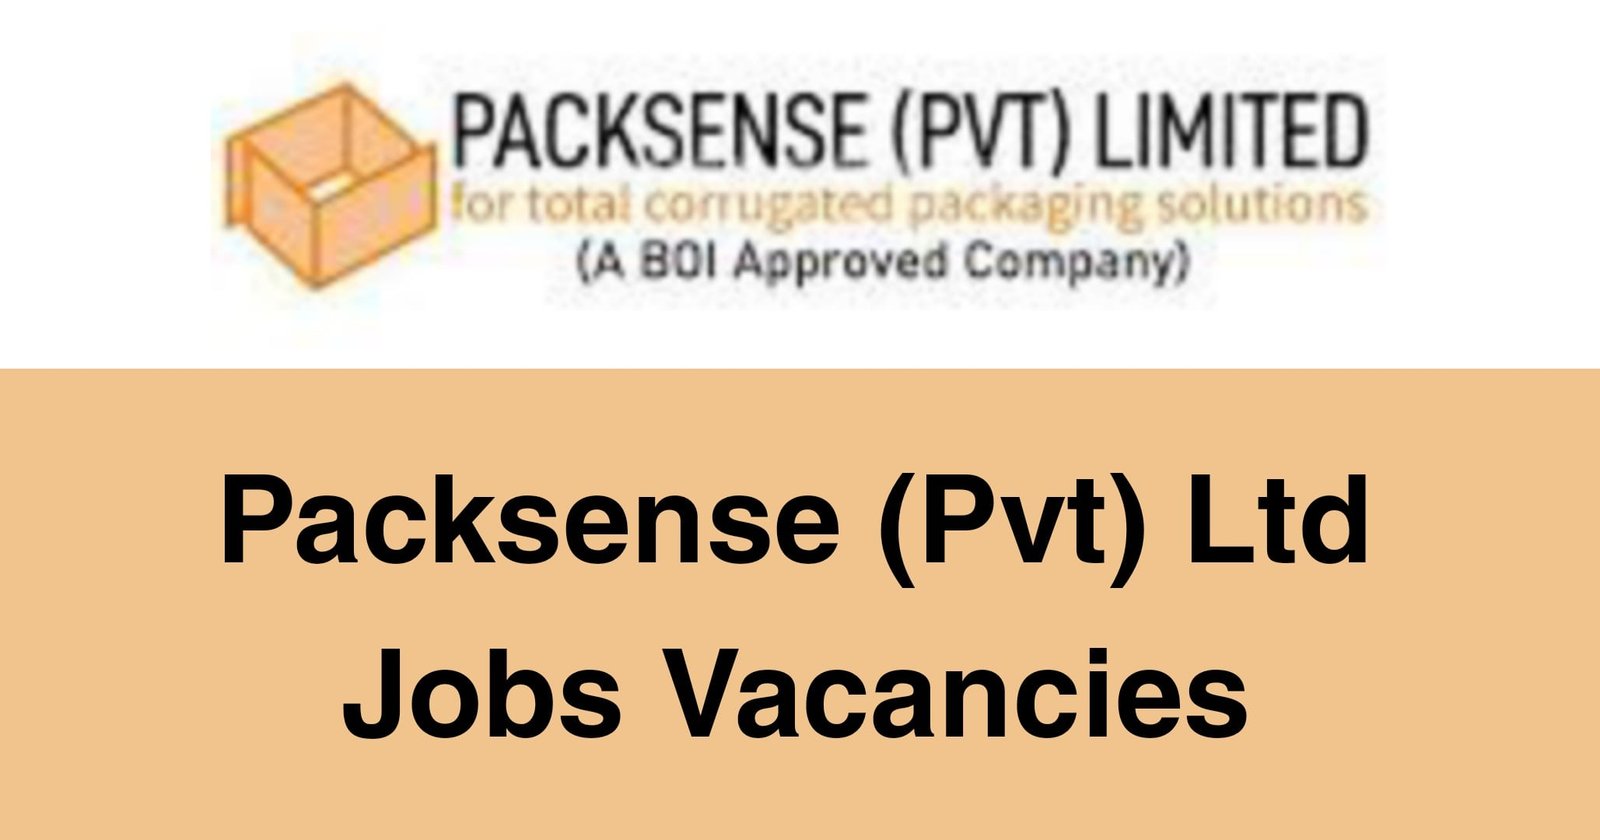 Packsense (Pvt) Ltd Jobs Vacancies